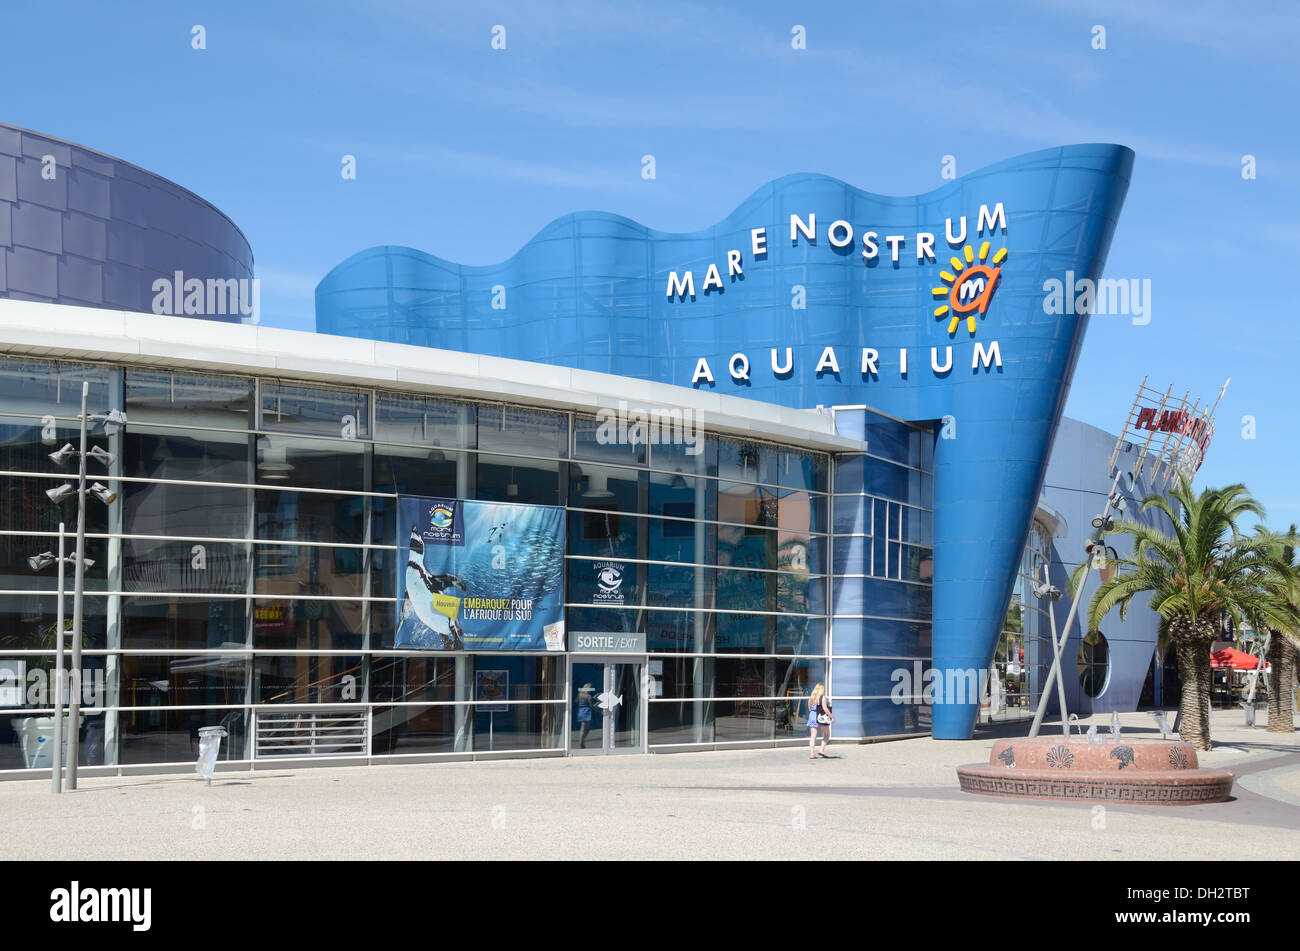 Aquarium Mare Nostrum, or Aquarium of the Mediterranean Sea, Odysseum Montpellier France Stock Photo